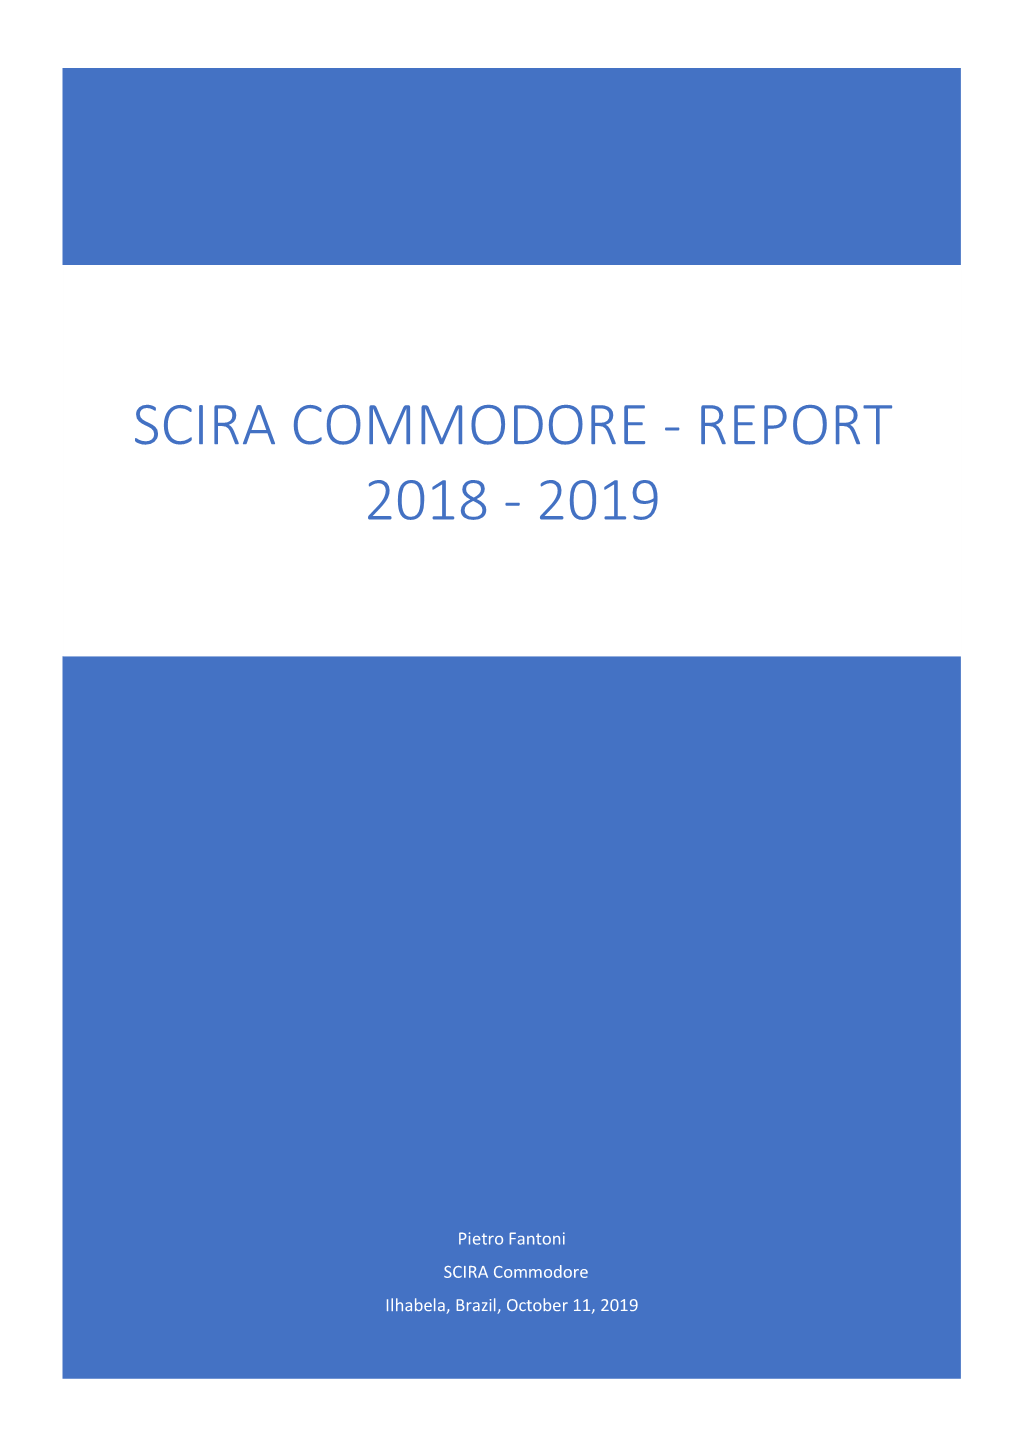 Scira Commodore - Report 2018 - 2019